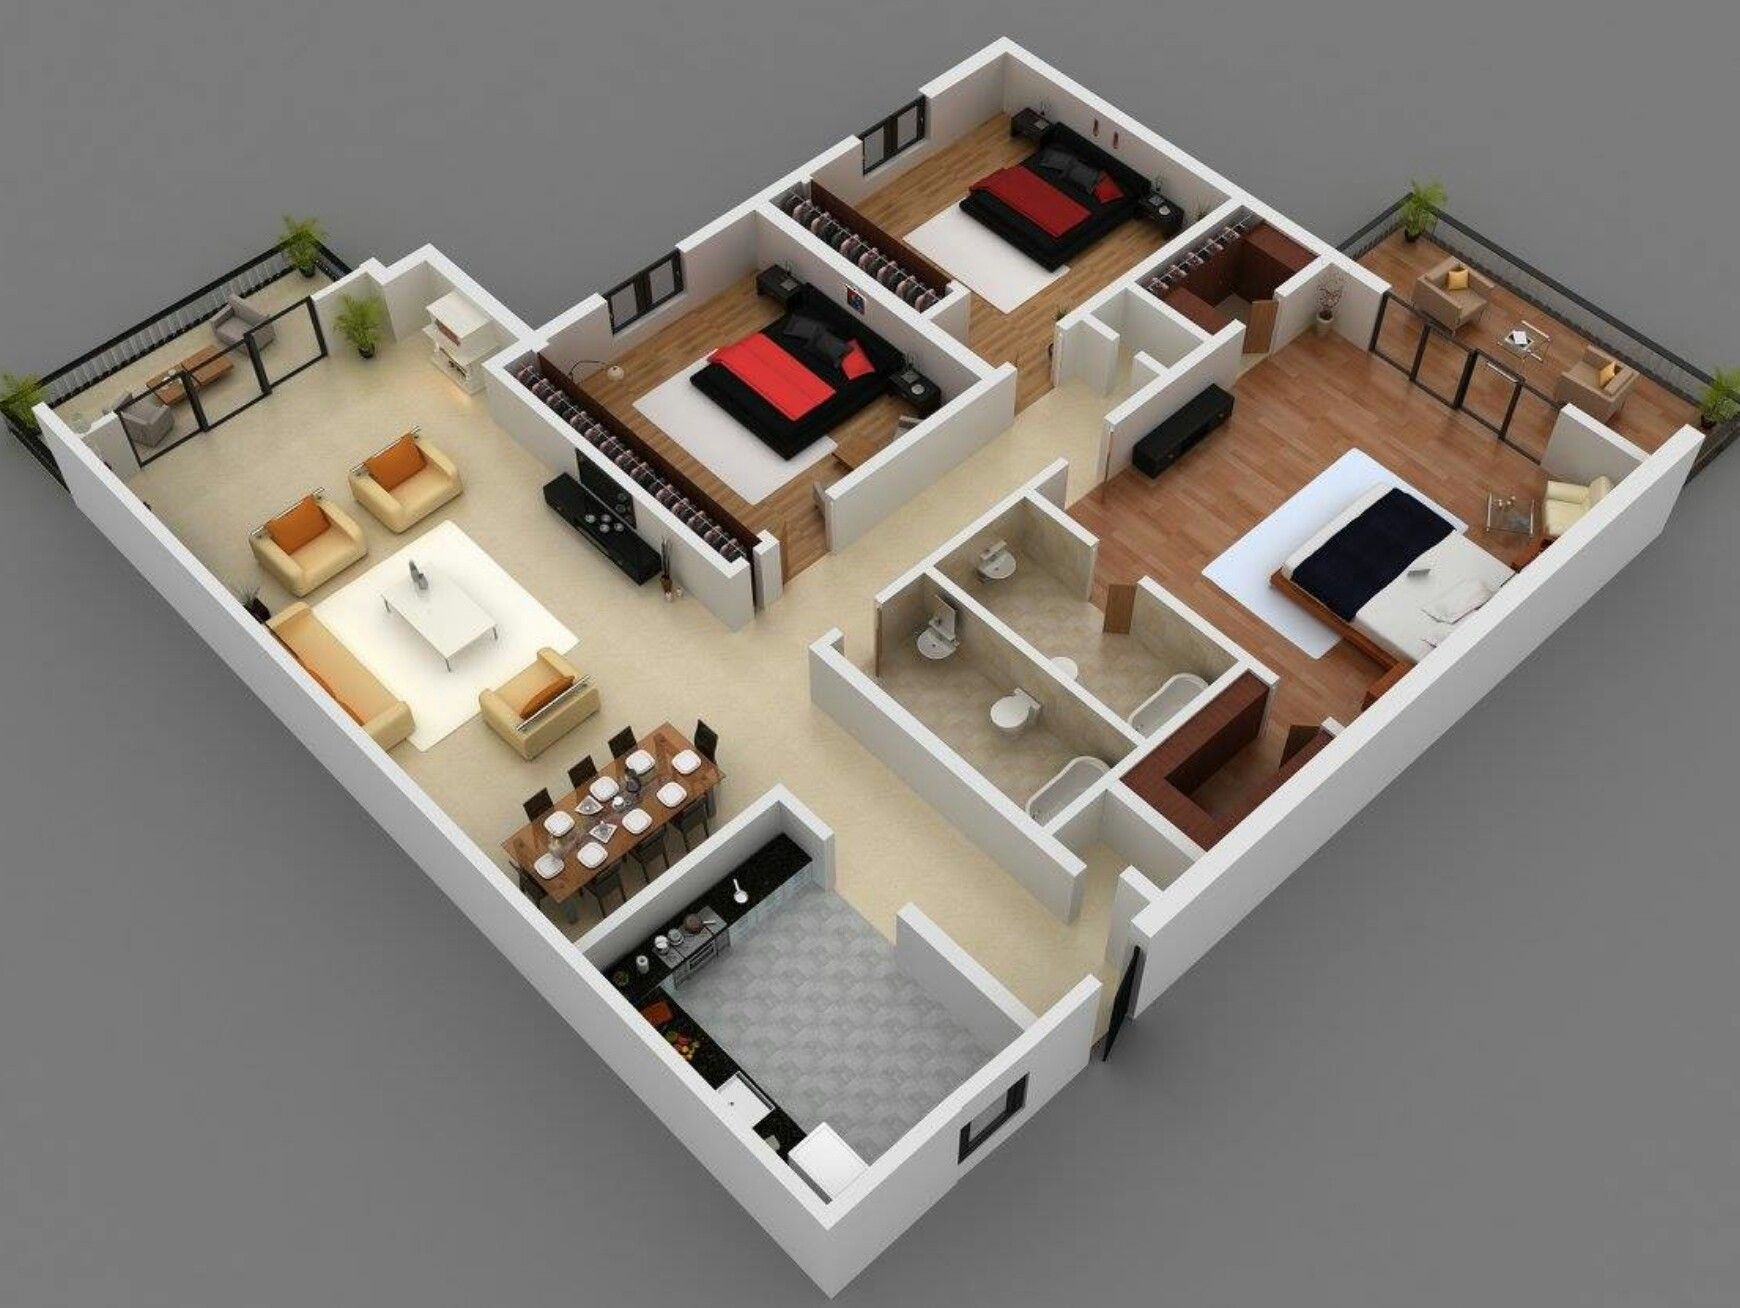 Desain Denah Rumah Type 60 Model Apartemen